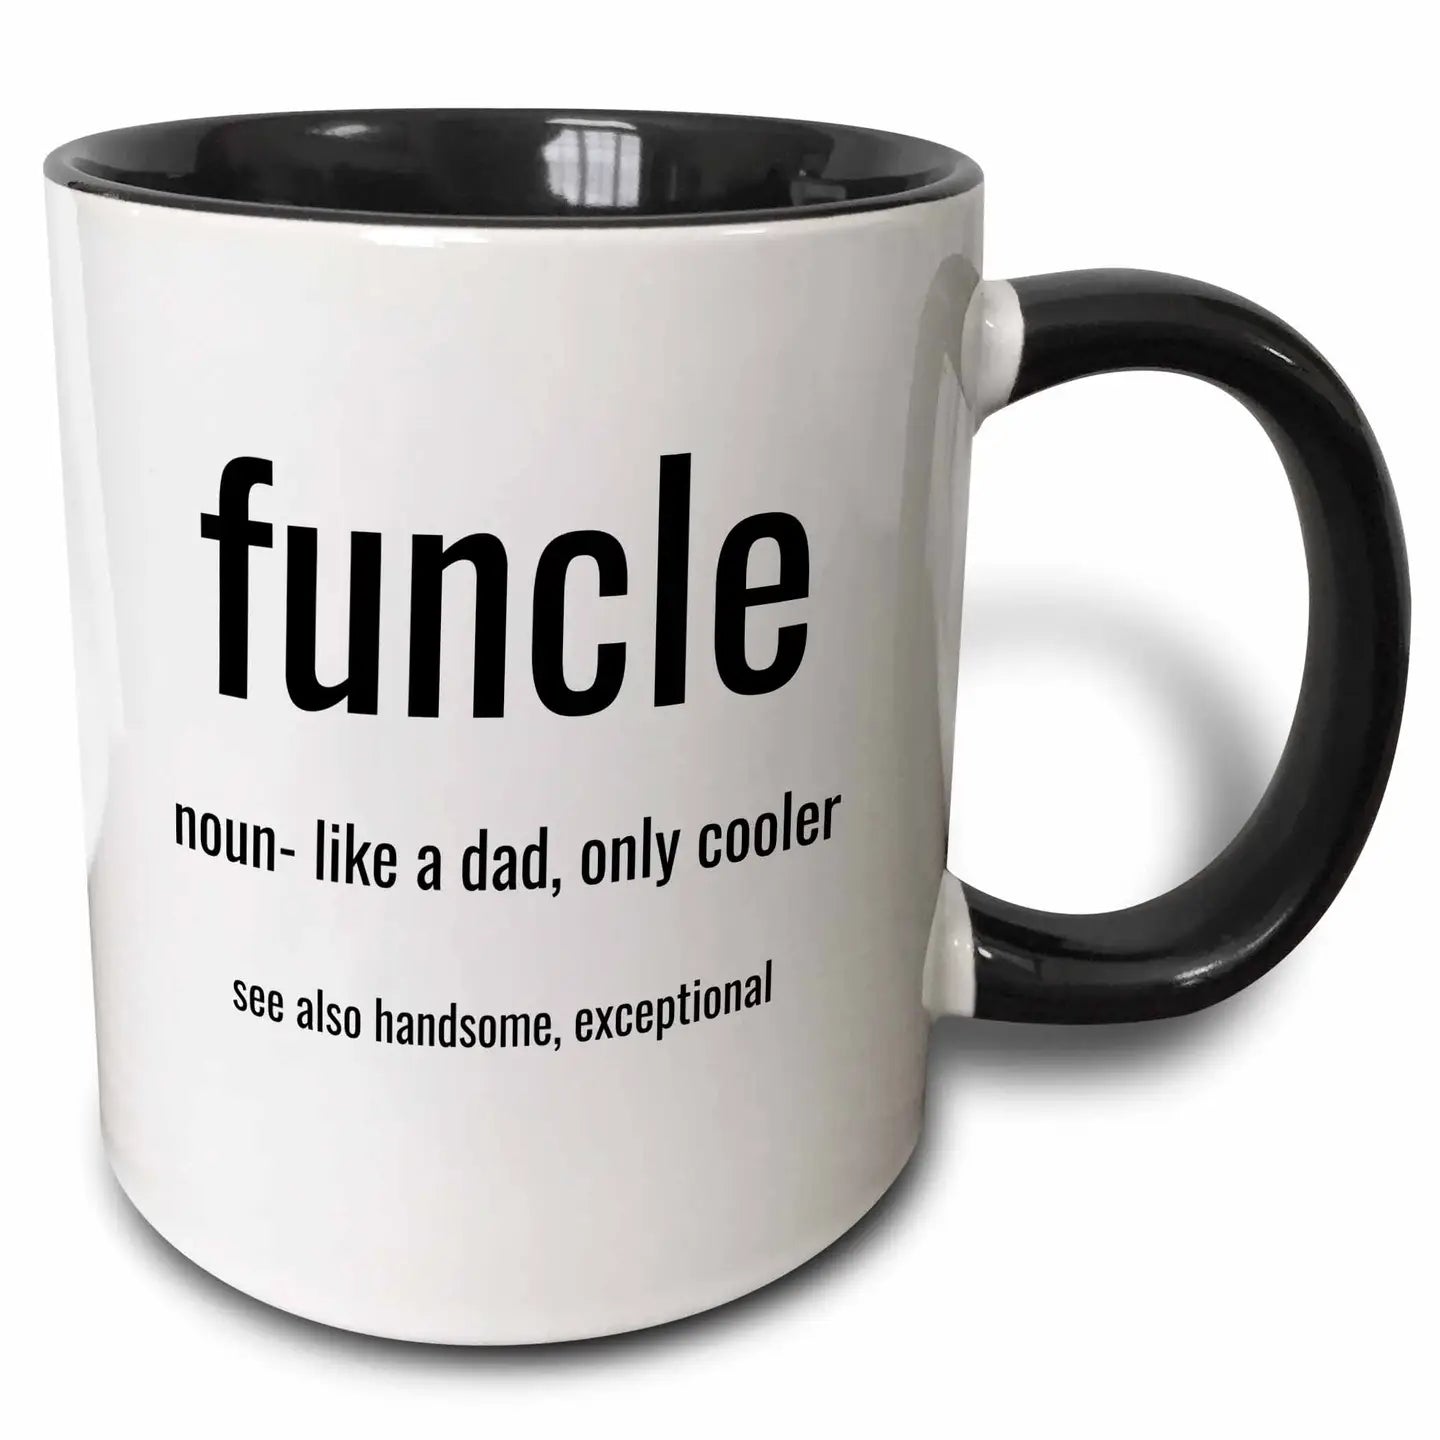 Funcle, Noun